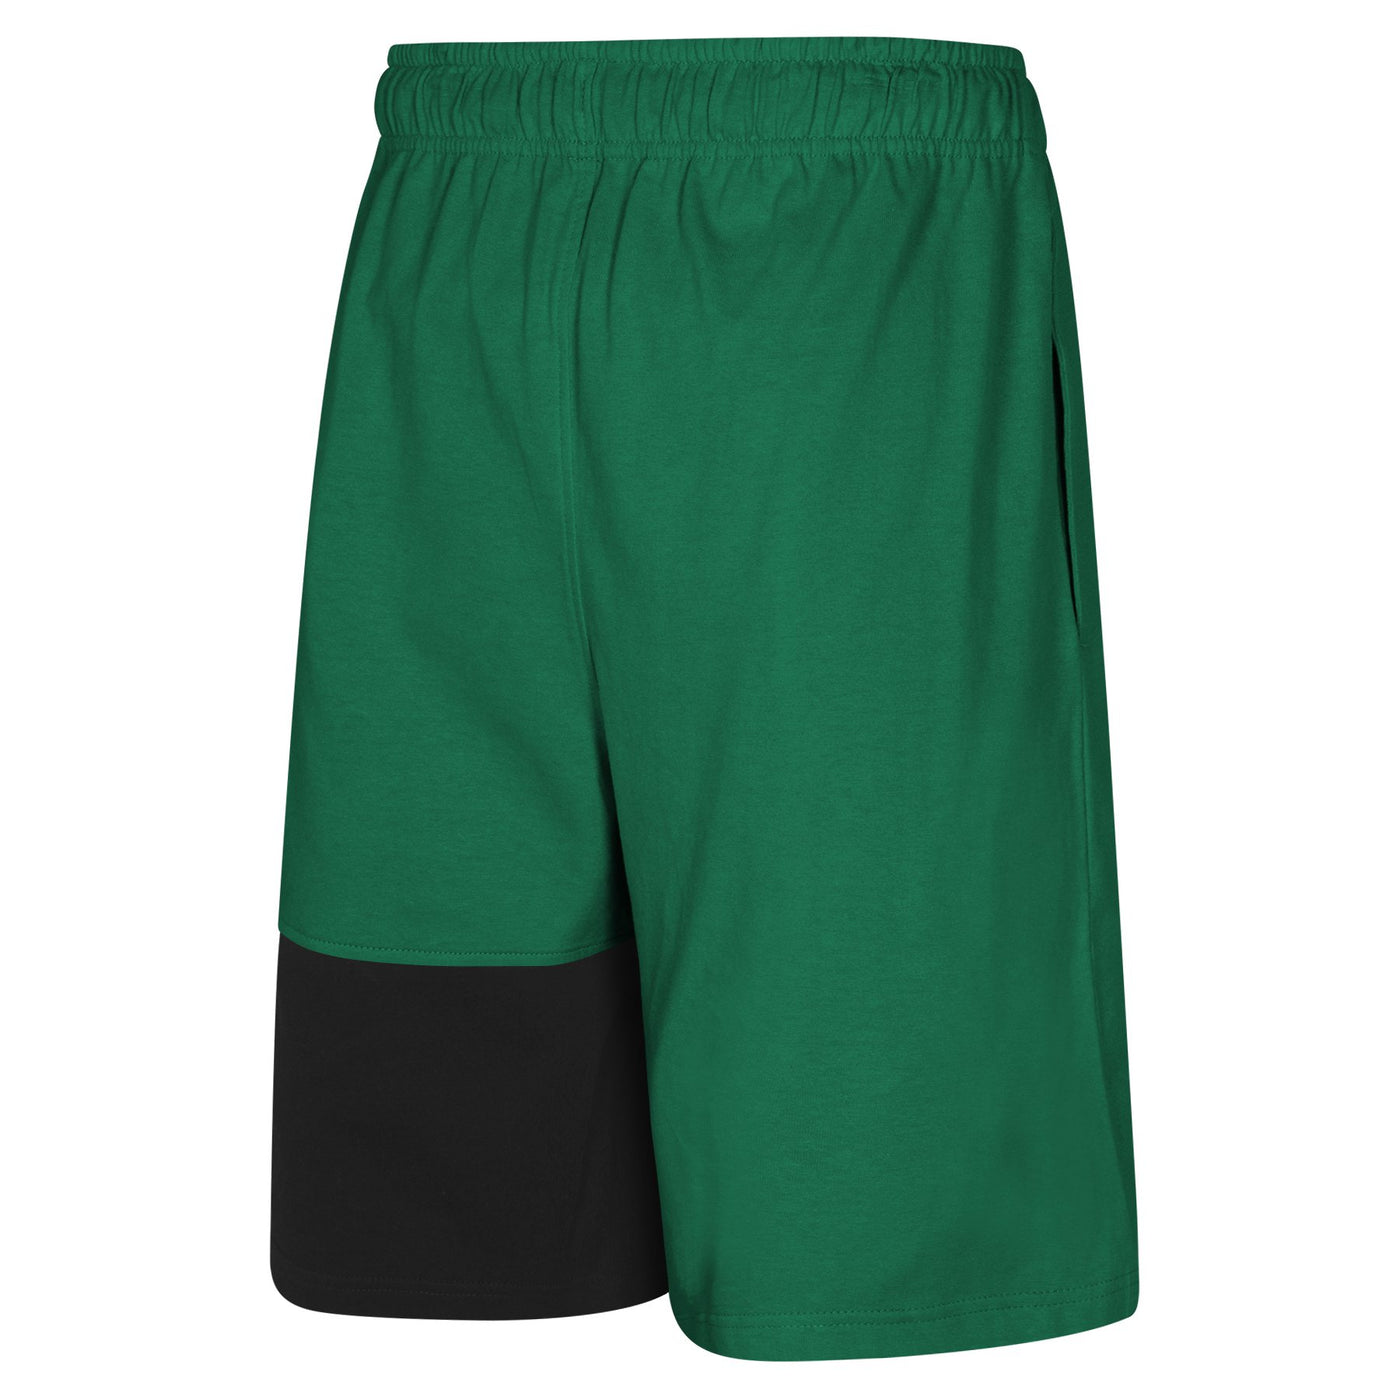 Mens Boston Celtics Jayson Tatum Pure Shooter Shorts